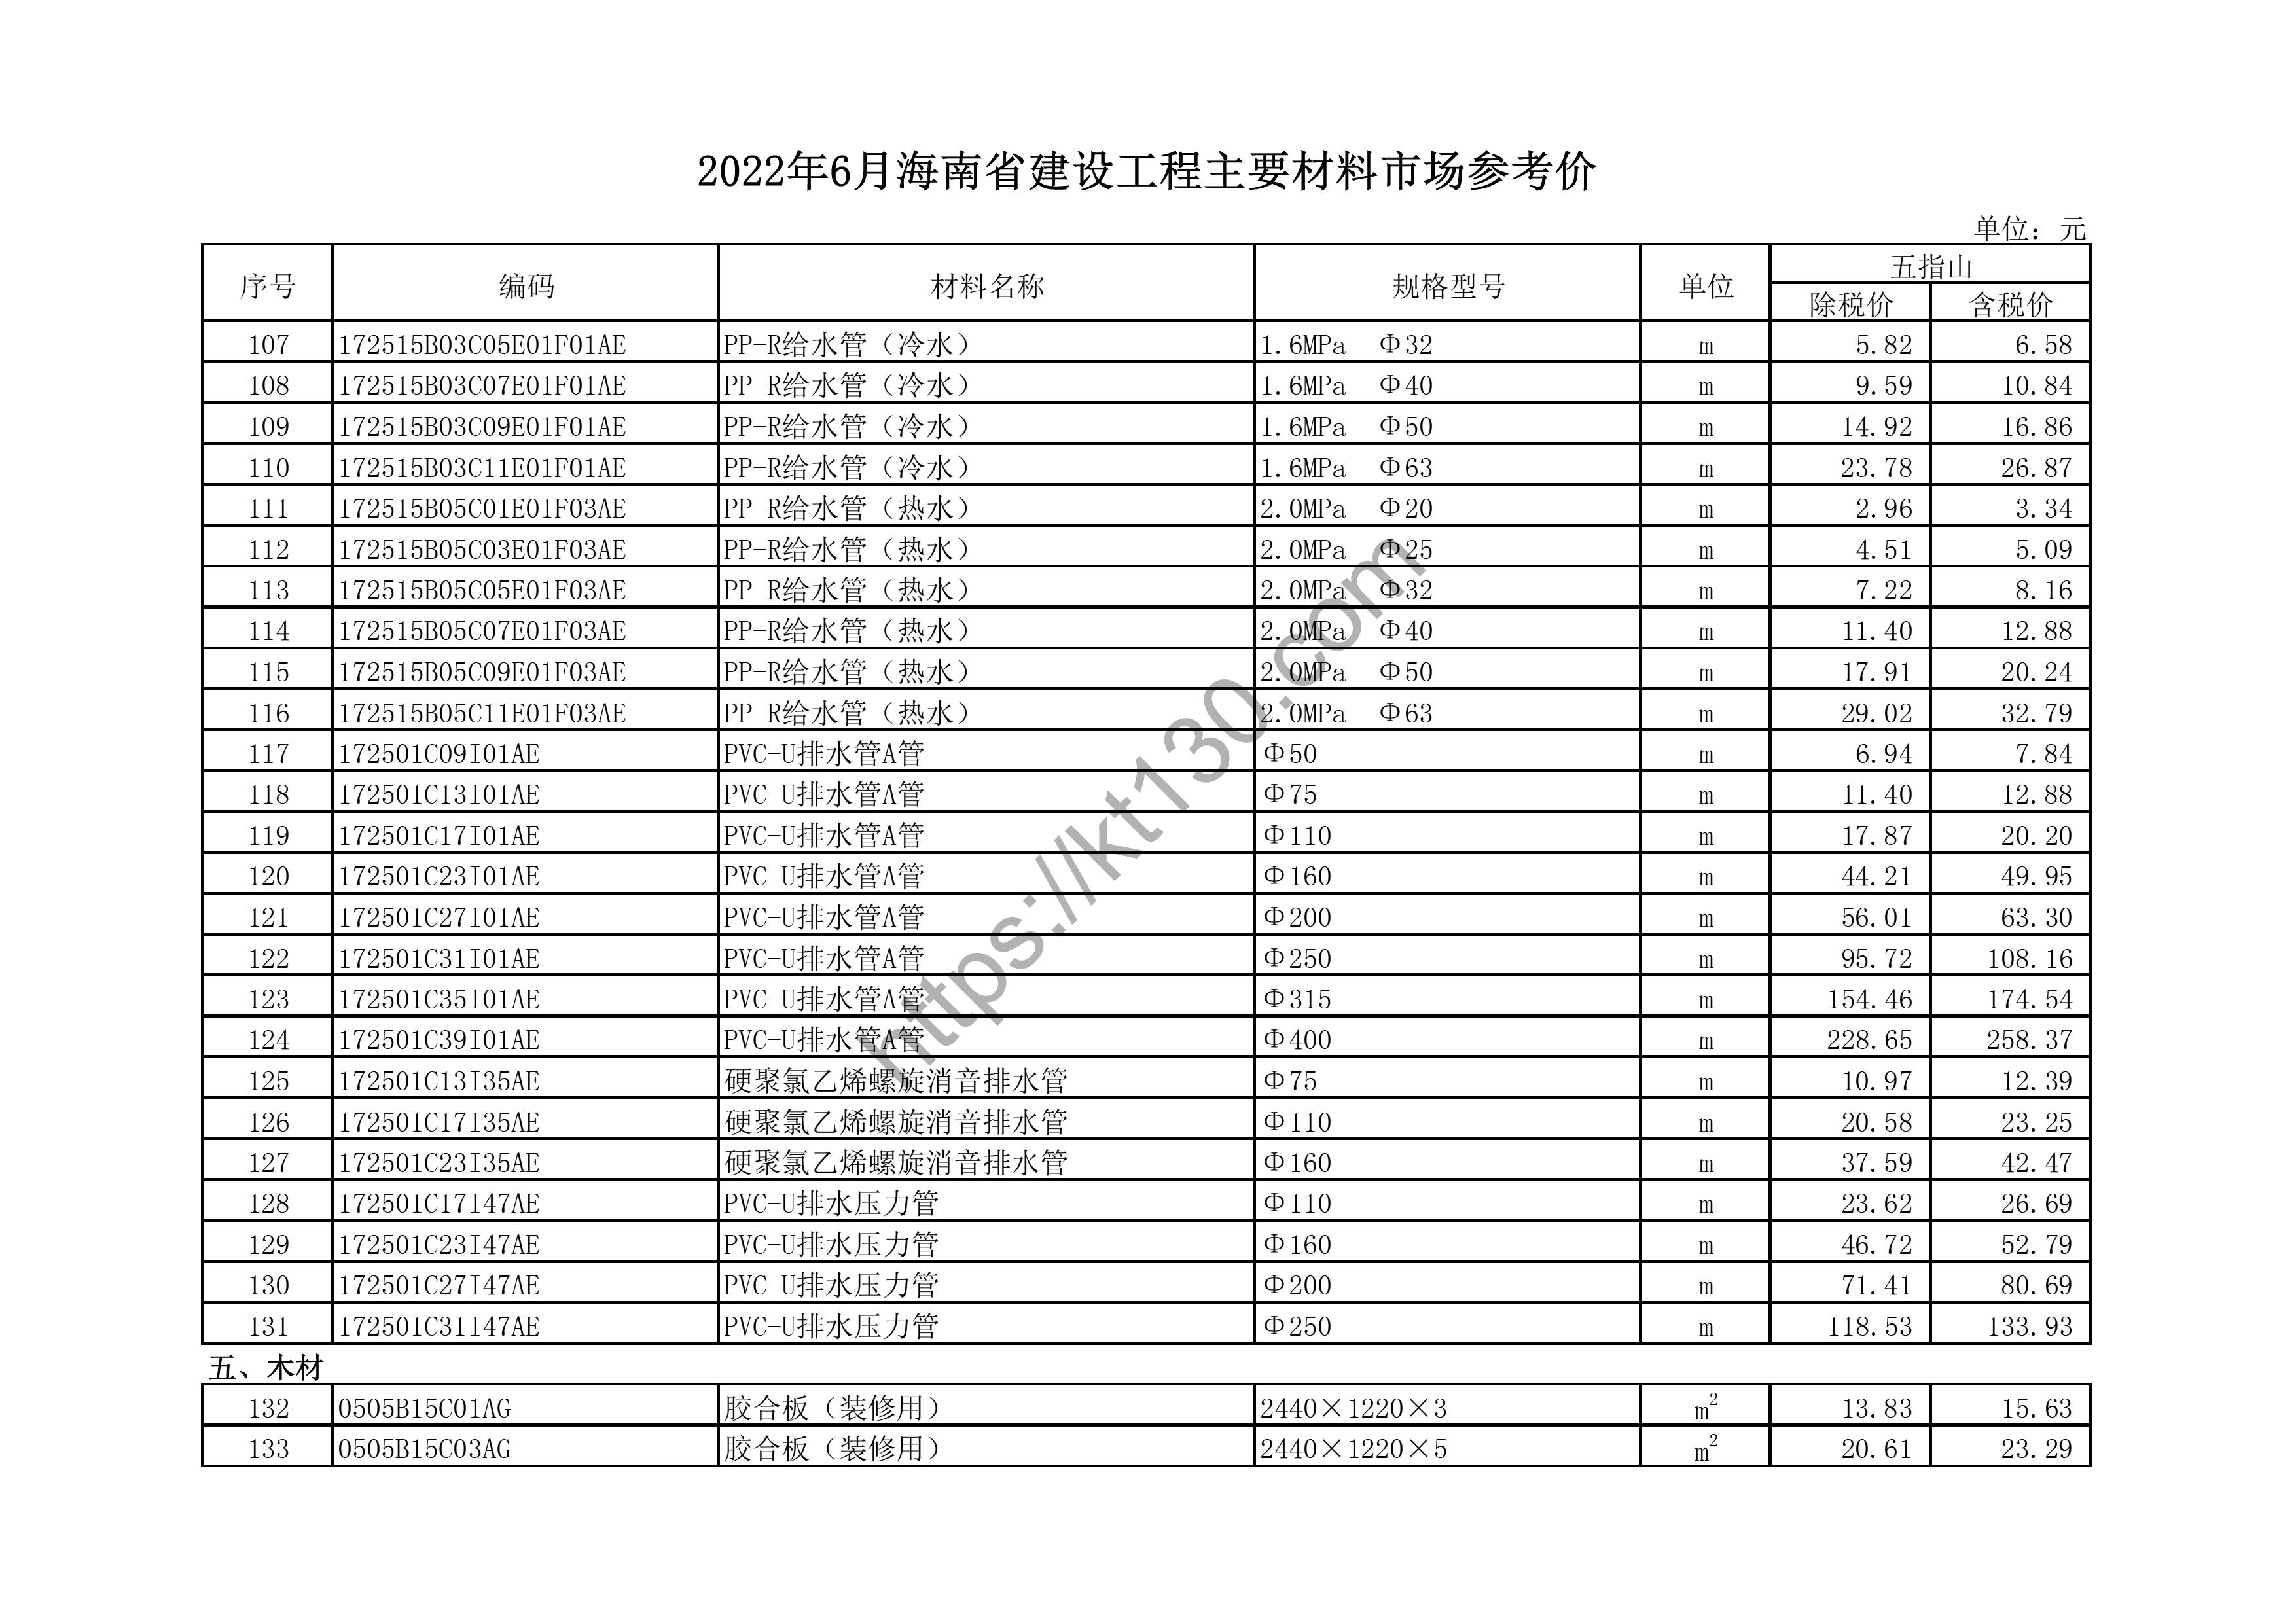 海南省2022年6月建筑材料价_钢带电缆_44550